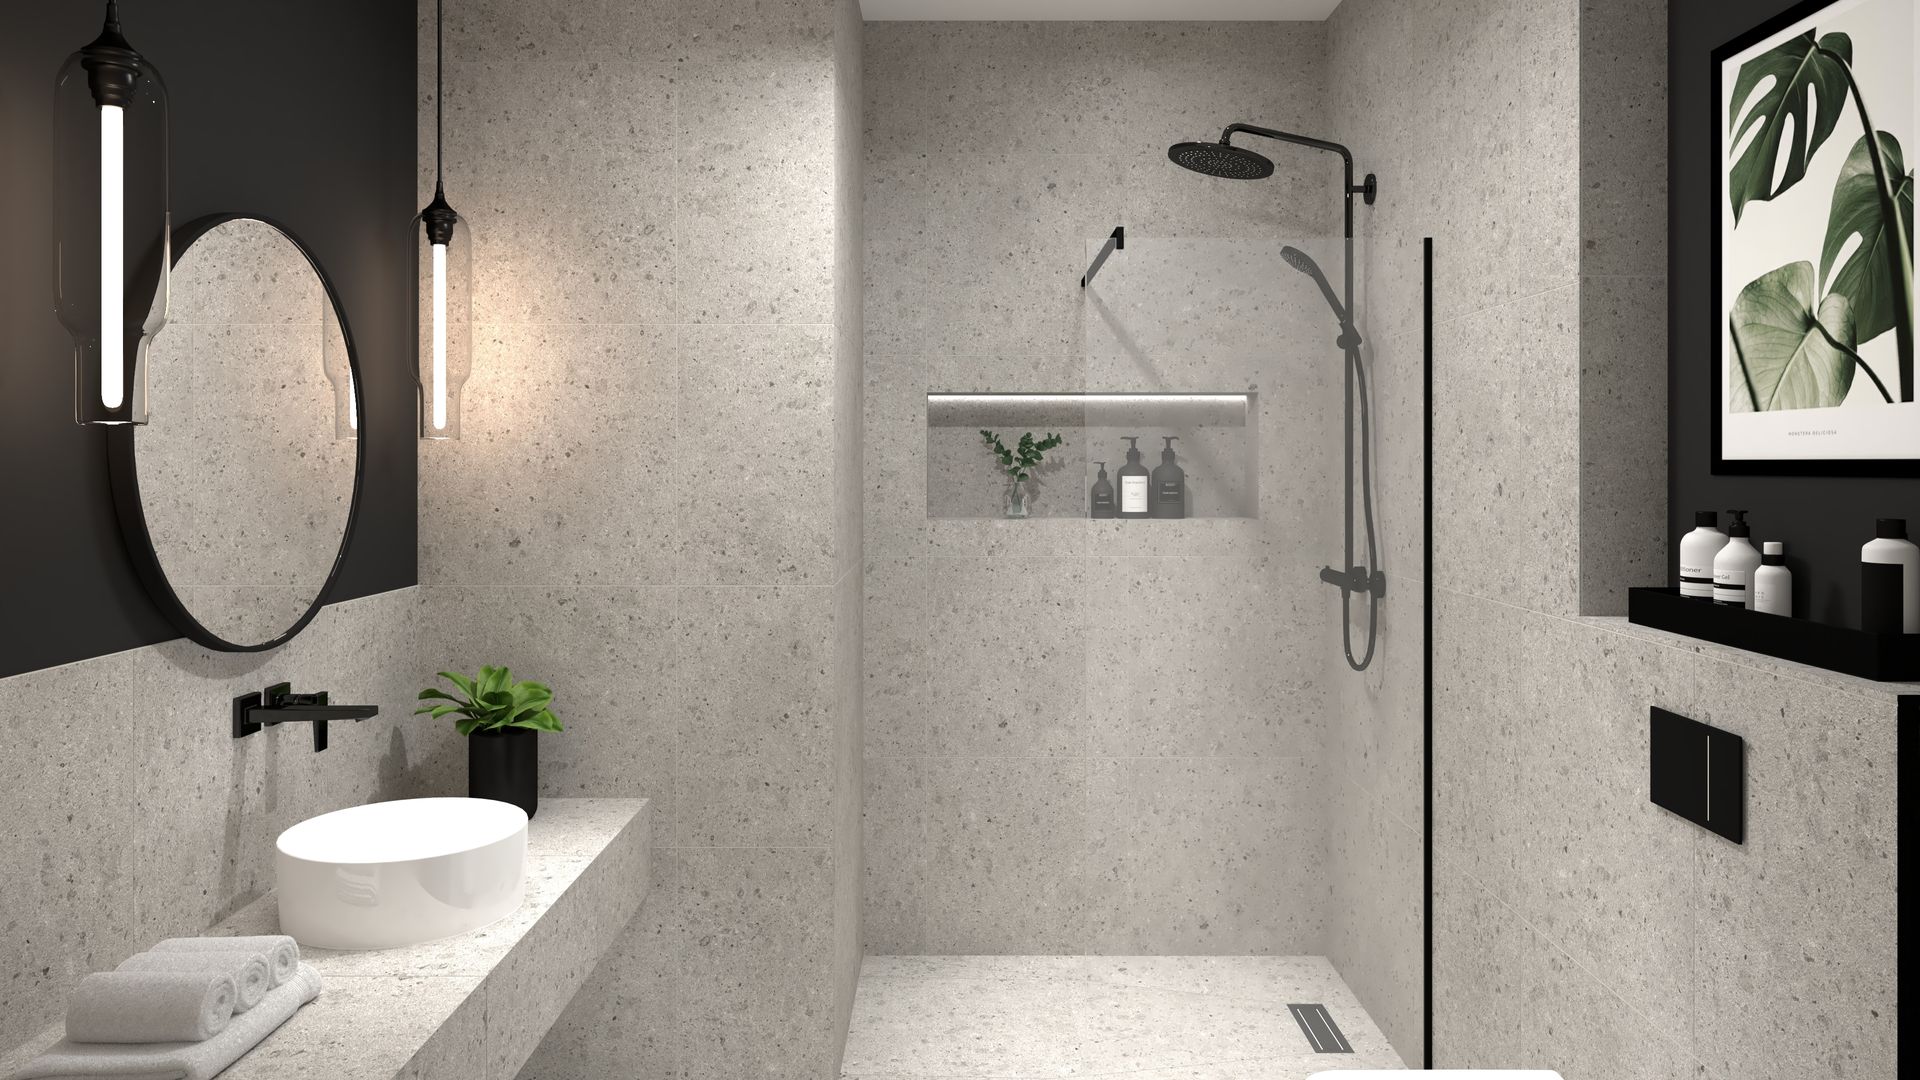 Urbanes Duschbad mit Terrazzo-Fliesen + Gäste-WC, BANOVO GmbH BANOVO GmbH Industrial style bathrooms